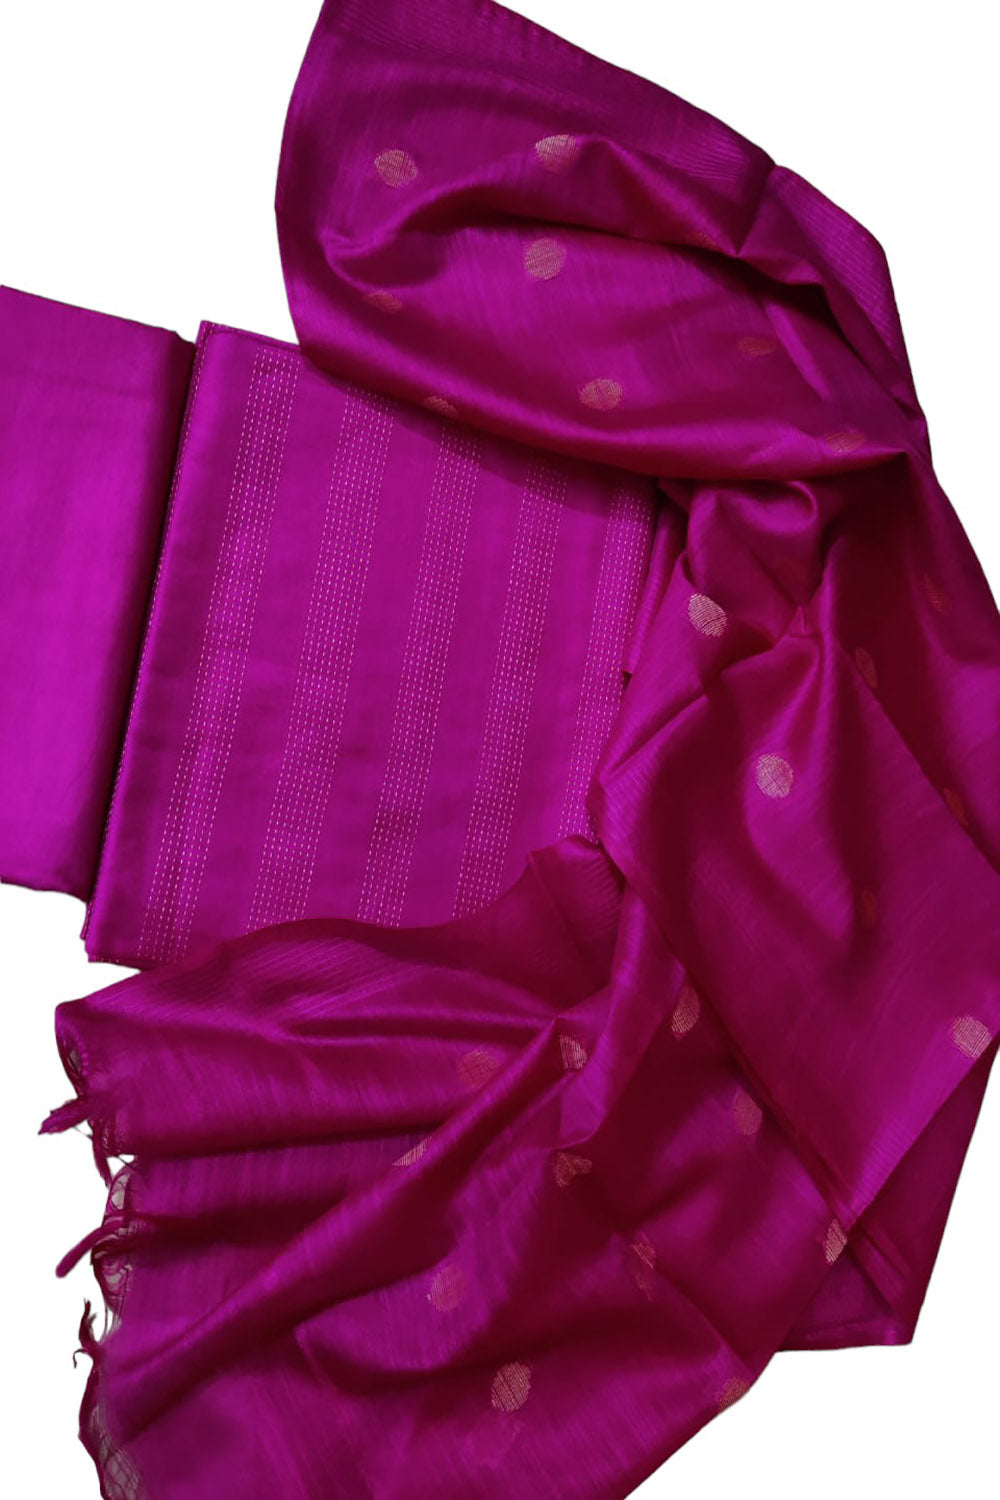 Stylish Pink Bhagalpur Cotton Silk Suit Set - Unstitched - Luxurion World